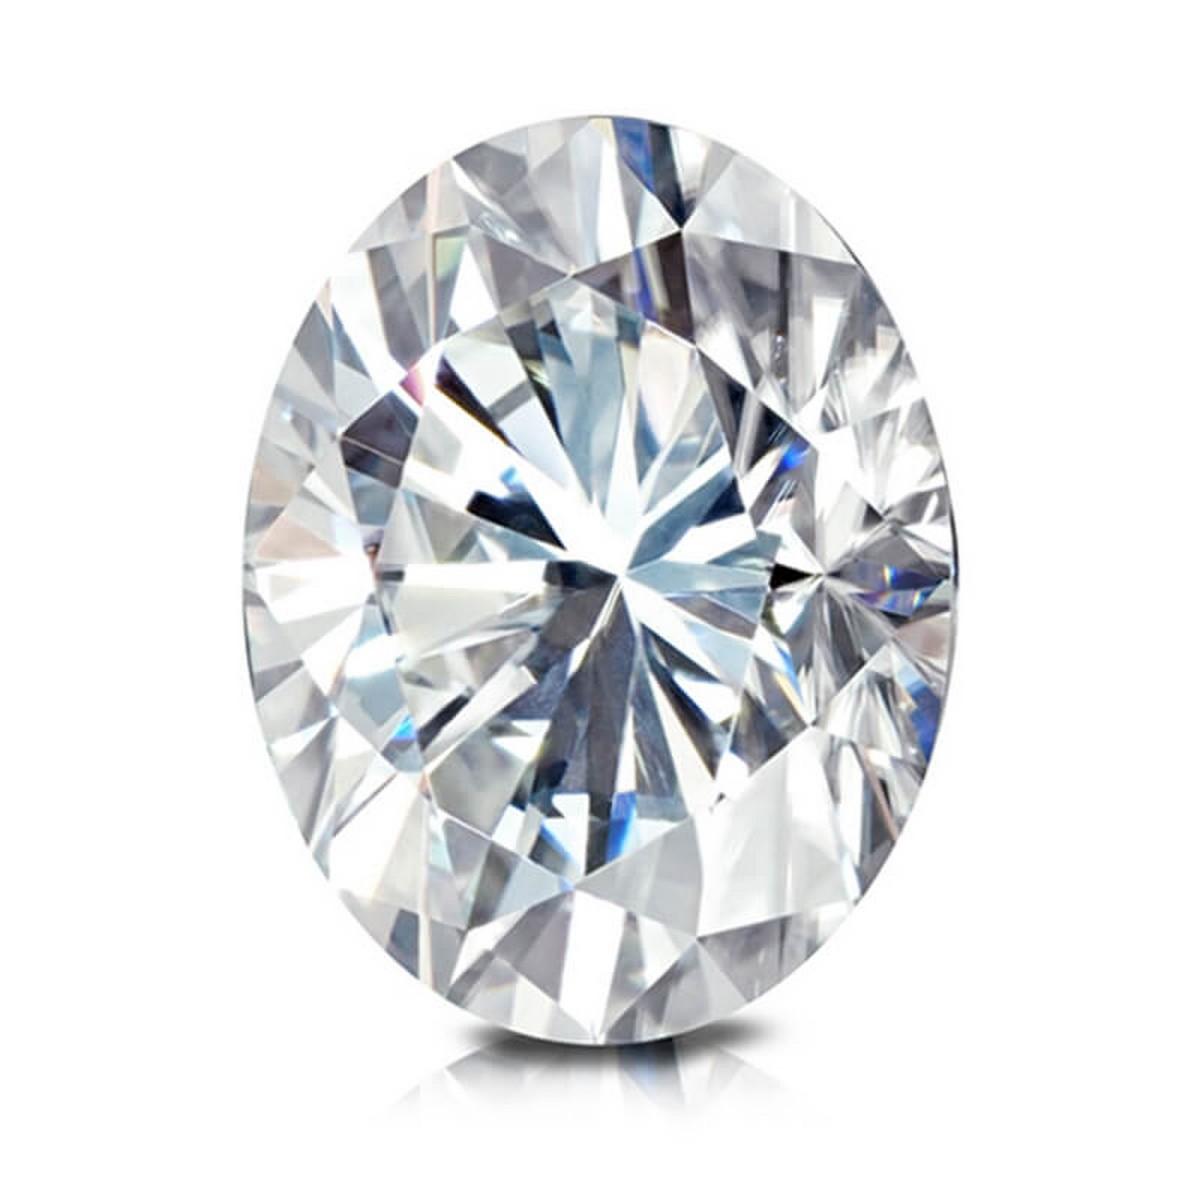 3.08 ctw. SI1 GIA Certified Oval Cut Loose Diamond (LAB GROWN)